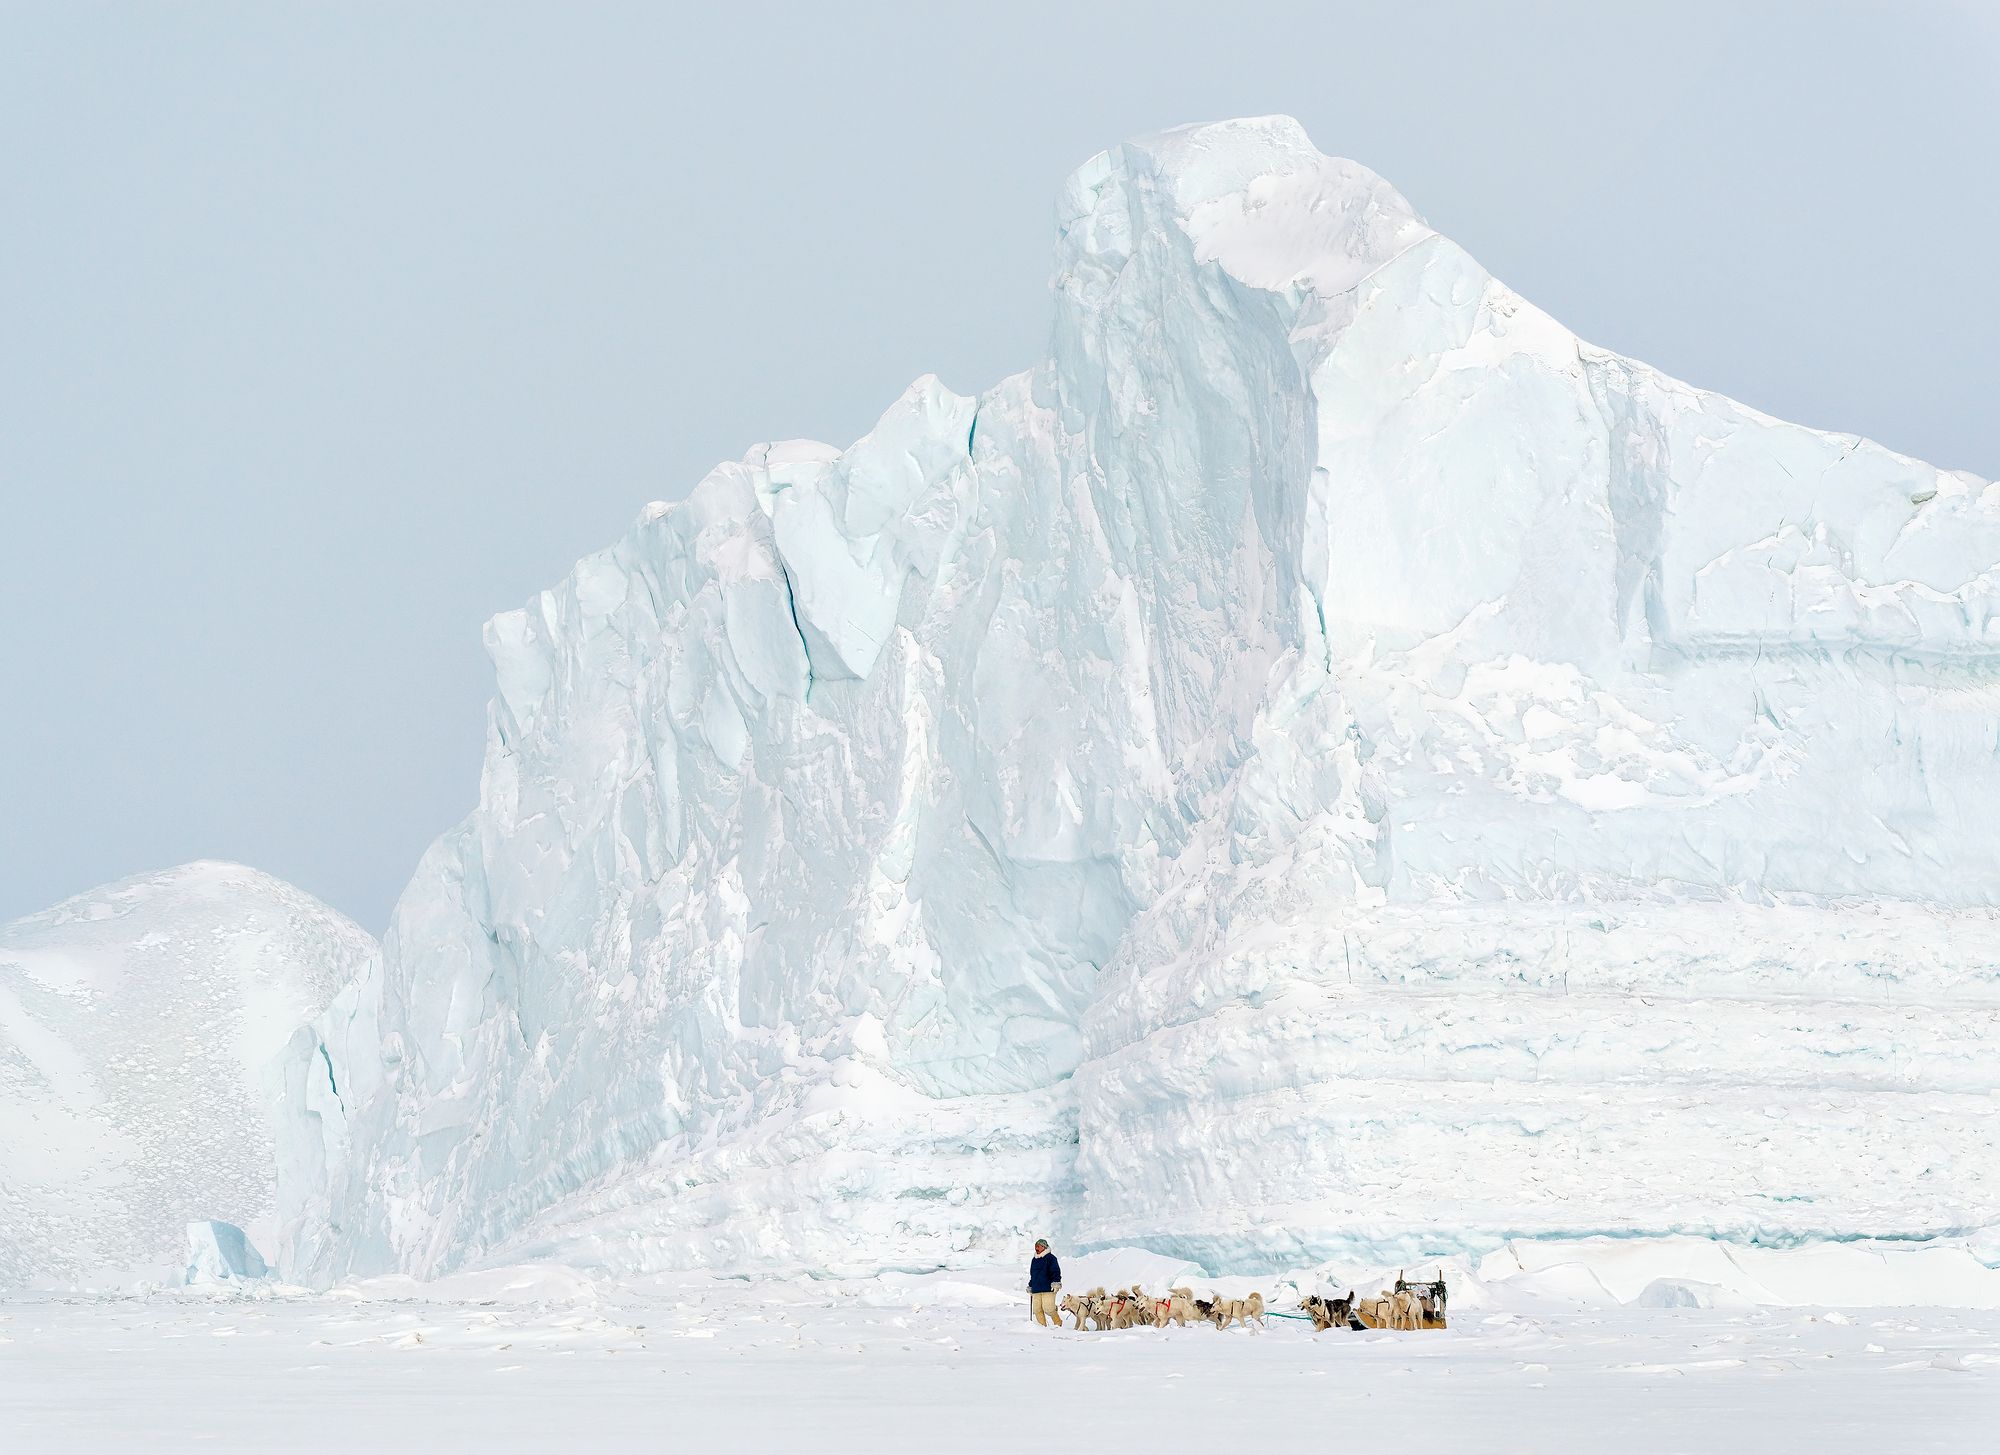 Tässä Tiina Itkosen ottamassa kuvassa metsästäjänuorukainen Piitak katsastaa hylkeenpyyntipaikkoja hyisessä ympäristössä, jossa jäätikkö puskee mereen kerrostalon kokoisia jäävuoria. Meressä ne juuttuvat matalikkoon, kunnes jonon paine työntää reunimmaisen irti. Sitten jäävuoret lipuvat hitaasti ­kohti pohjoista, ohittavat tämän jäävuoren lailla Qaanaaqin ja kääntyvät lopulta takaisin etelään, aina niin alas, että yksi niistä saattoi aikoinaan upottaa Titanicin. 